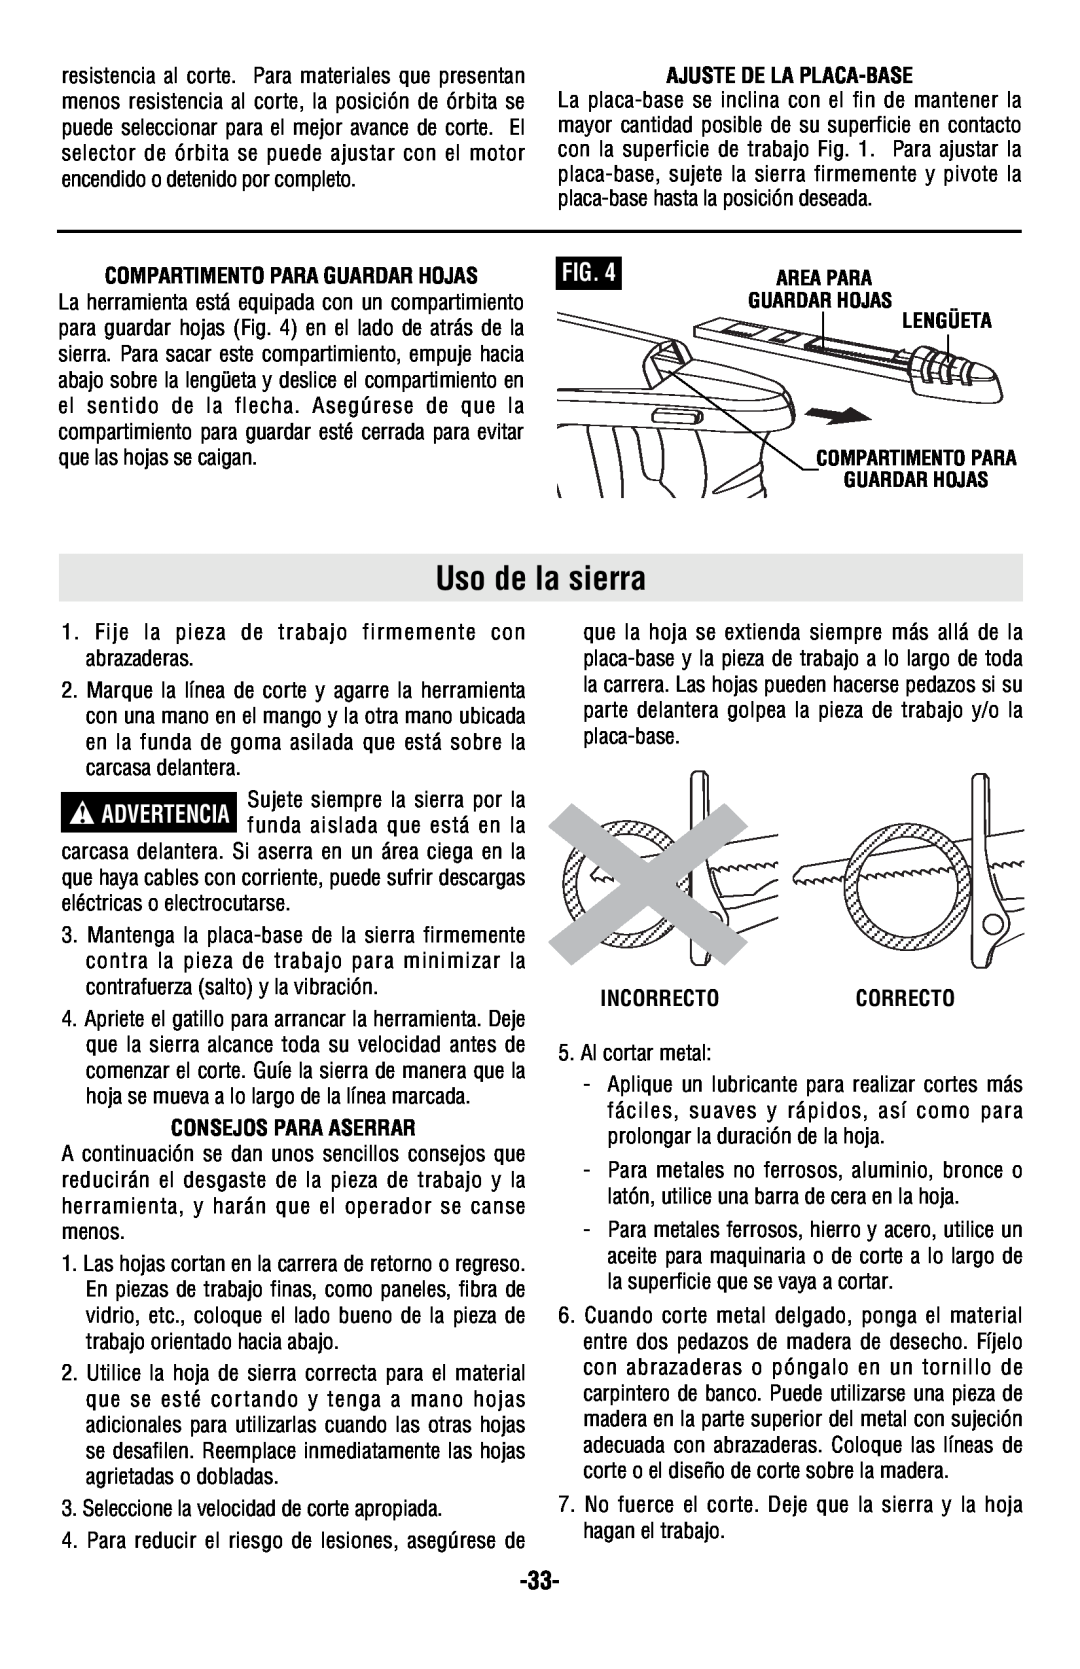 Skil 9350 manual Uso de la sierra, Ajuste De La Placa-Base, Compartimento Para Guardar Hojas, Consejos Para Aserrar 